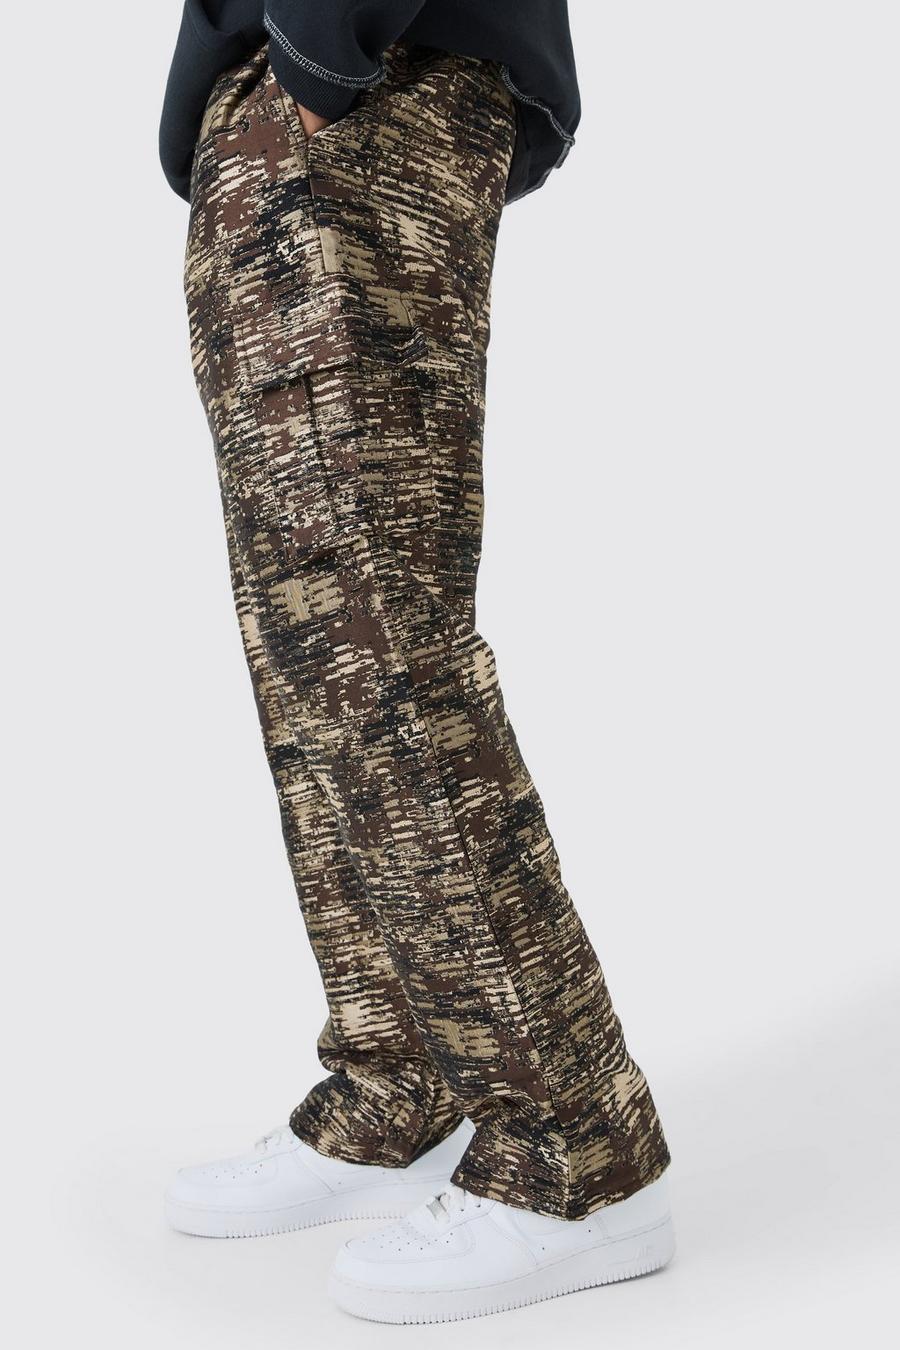 Pantalón Tall cargo holgado texturizado de camuflaje, Stone